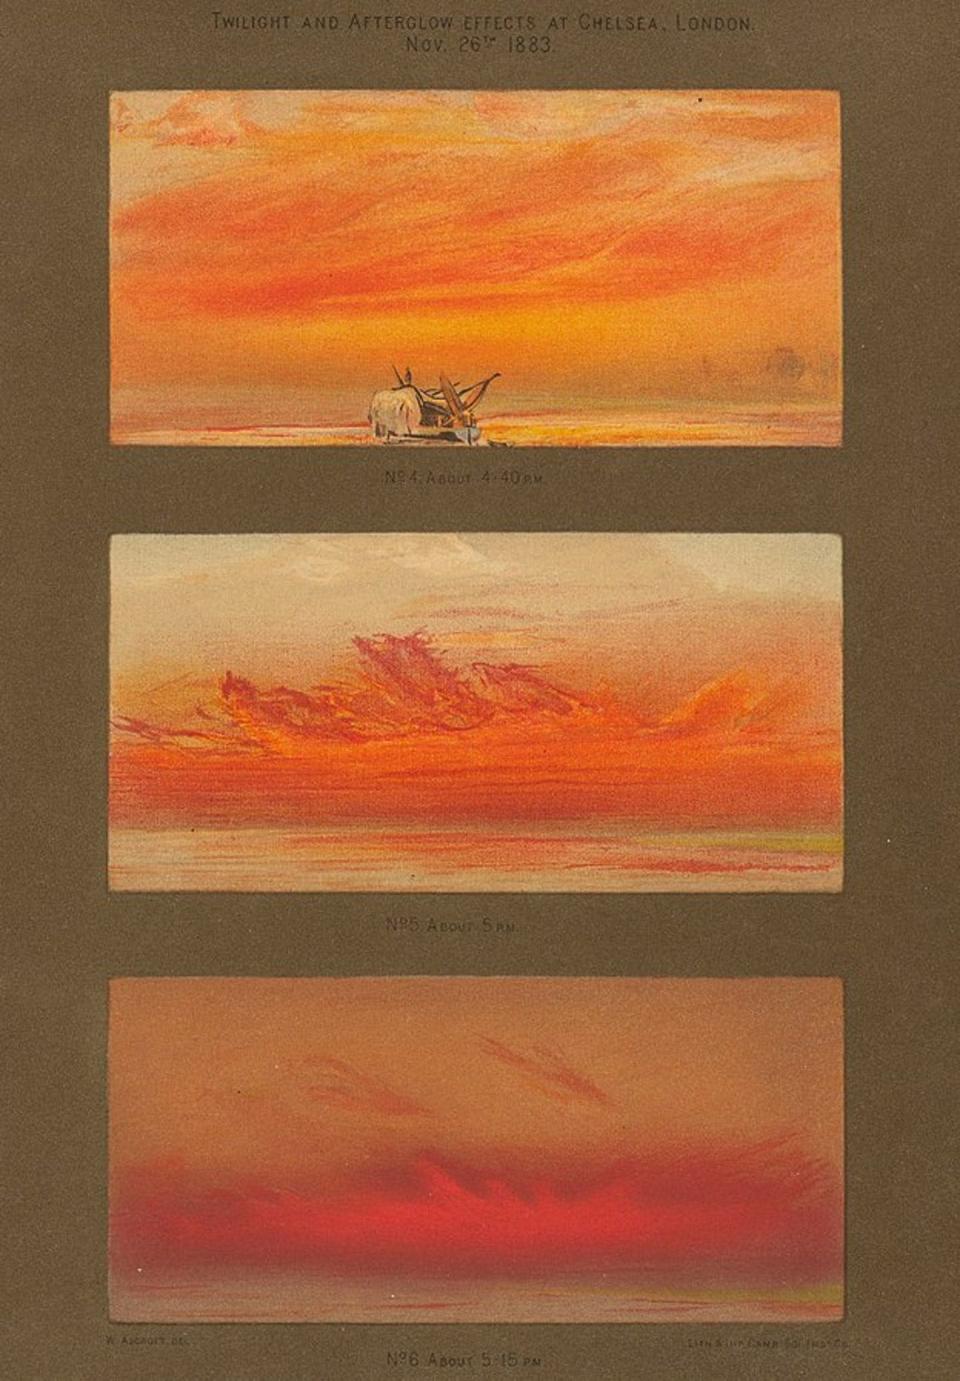 <span class="caption">Bocetos de crepúsculo y resplandor crepuscular en una noche en 1883 en Londres después de la erupción del Krakatoa.</span> <span class="attribution"><span class="source">William Ashcroft via Houghton Library/Harvard University</span></span>